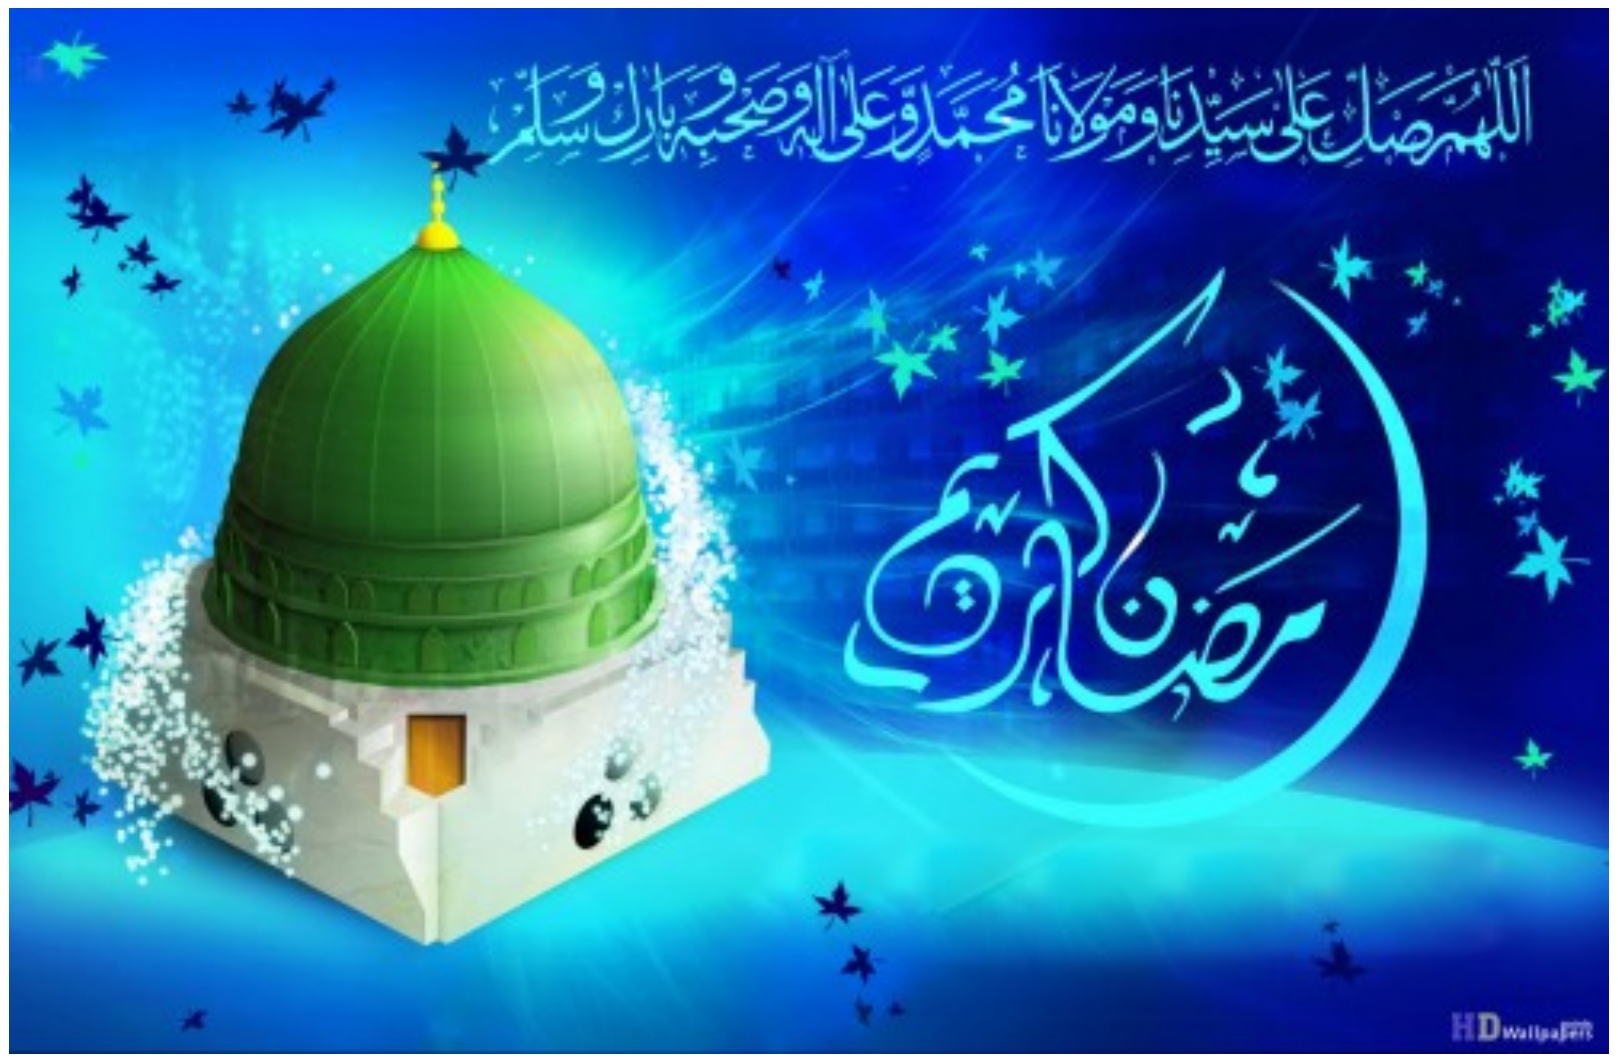 carta da parati ramadan di alta qualità,blu,verde,mondo,disegno grafico,illustrazione